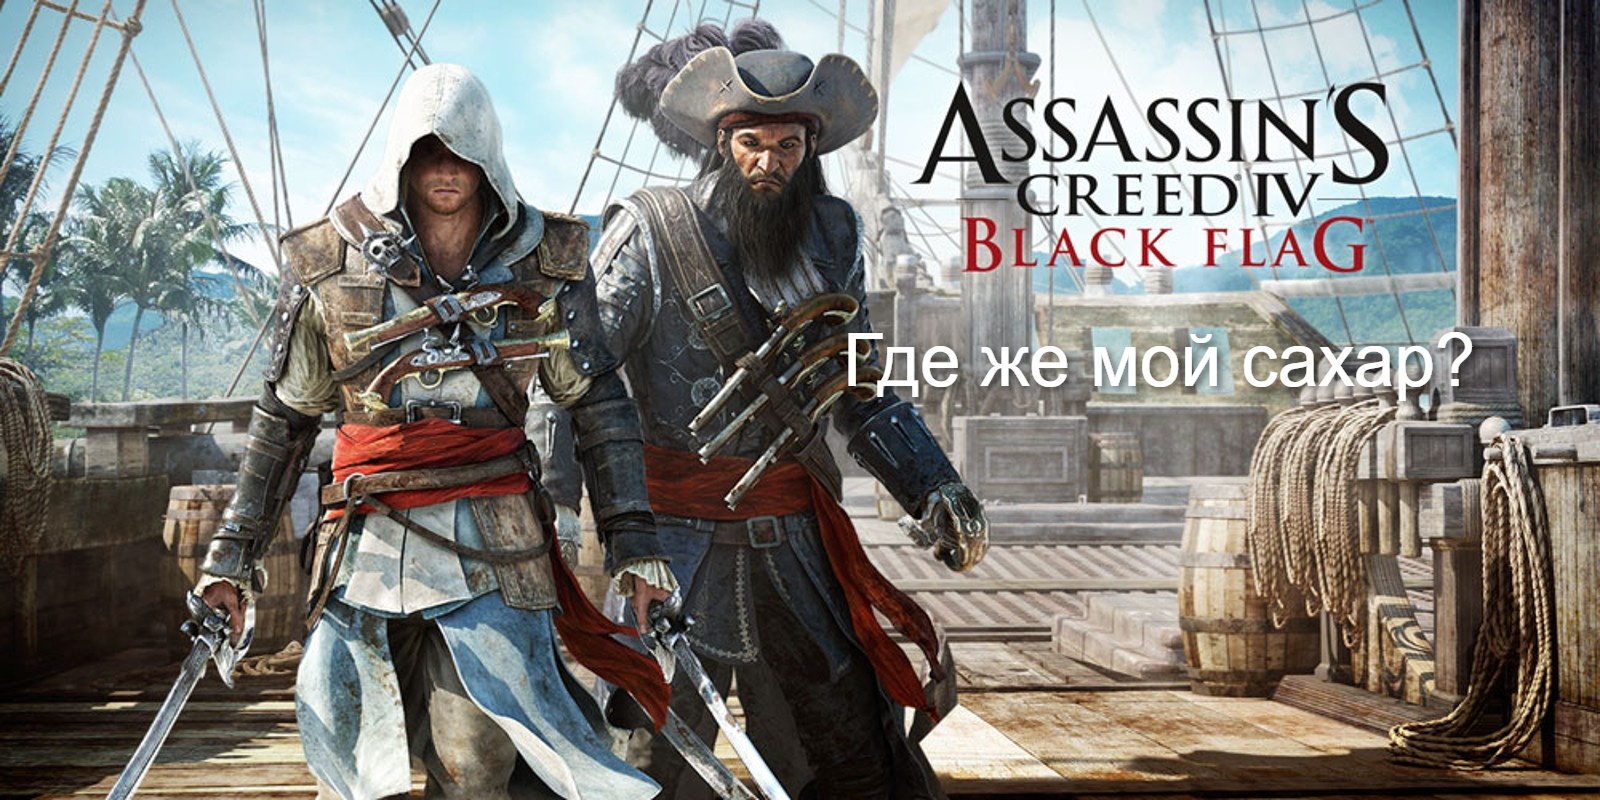 Прохождение Assassin's Creed 4- Black Flag (Чёрный флаг). Где же мой сахар-.mp4